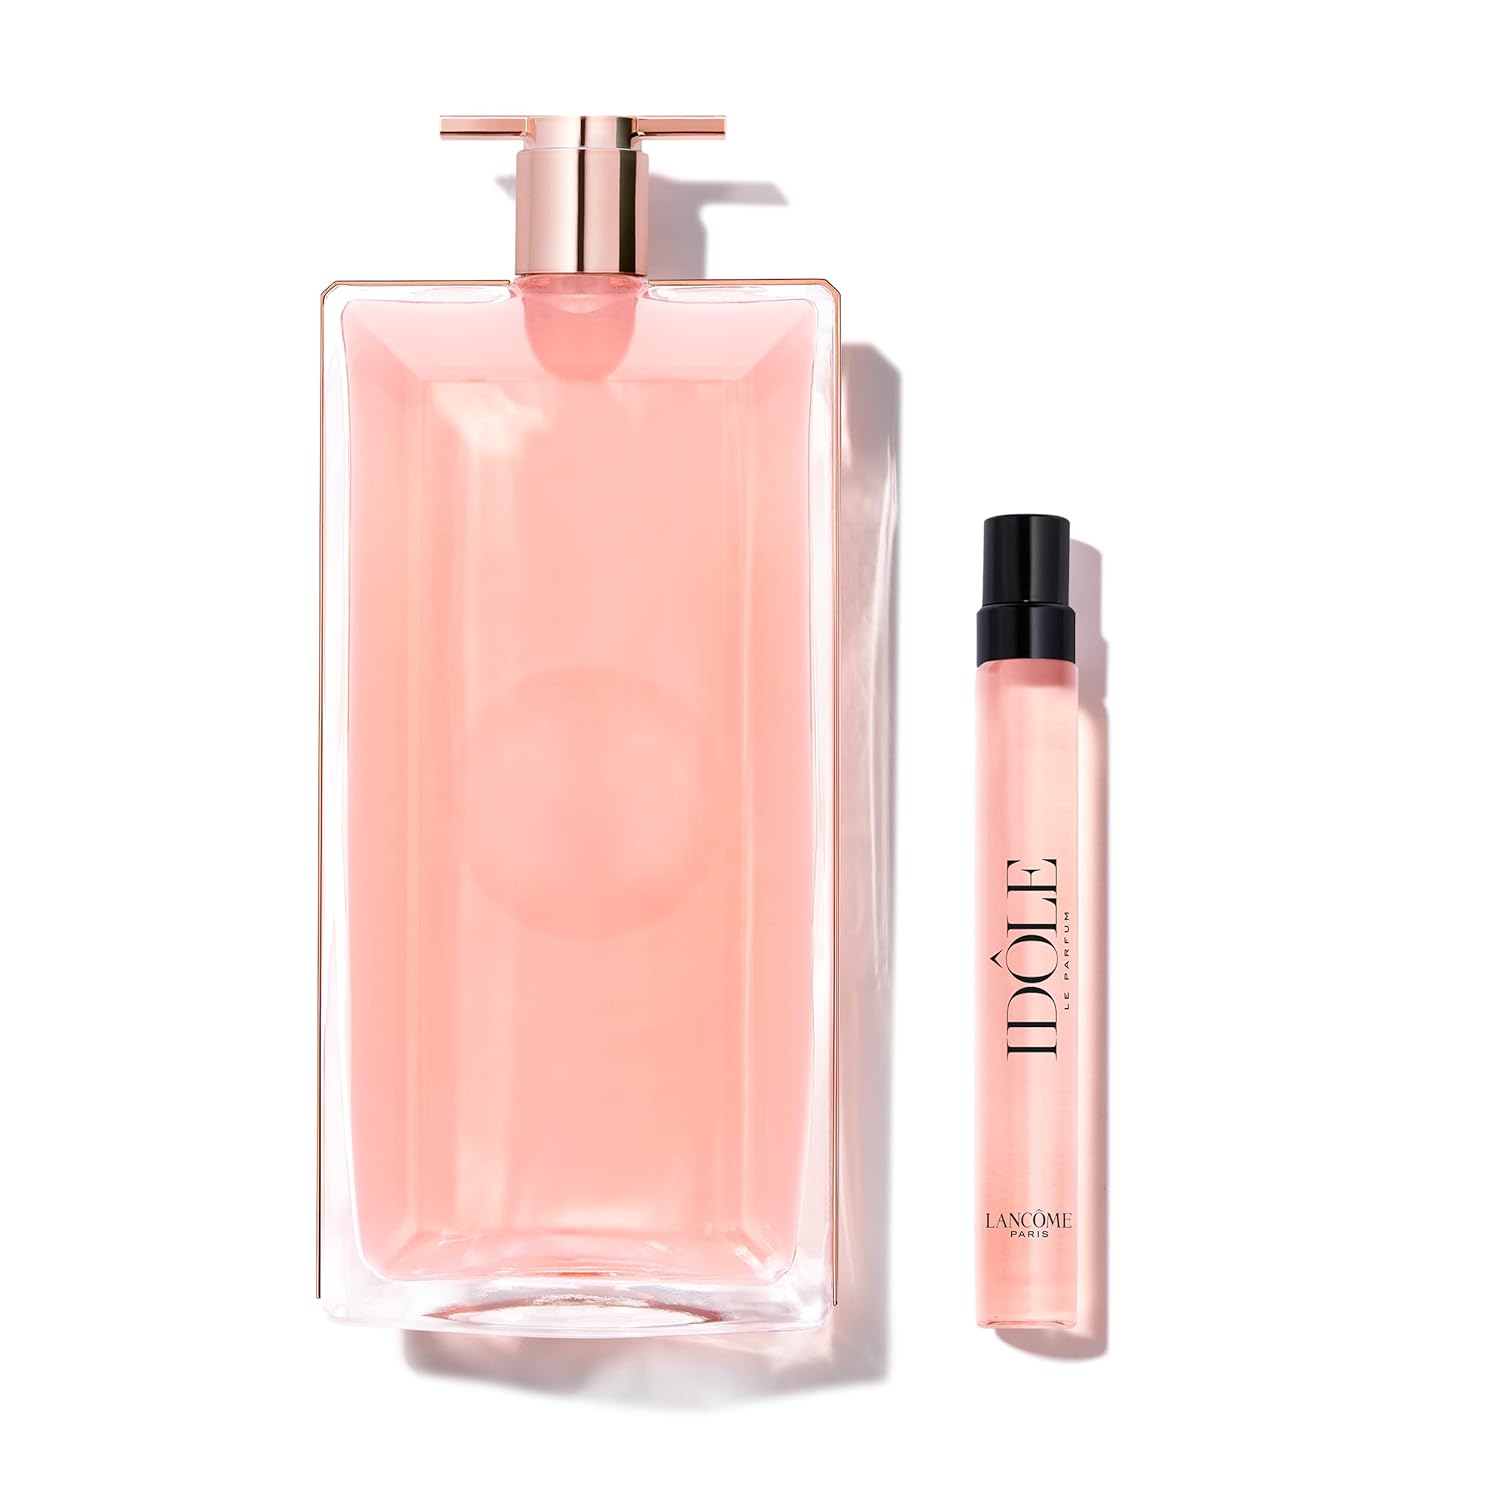 Lancôme Idôle Eau de Parfum Women's Perfume Set - Fresh & Floral - With Iris, Patchouli & Vanilla - 2-Pack of Full Size 3.4 Fl Oz & Travel size 0.34 Fl Oz